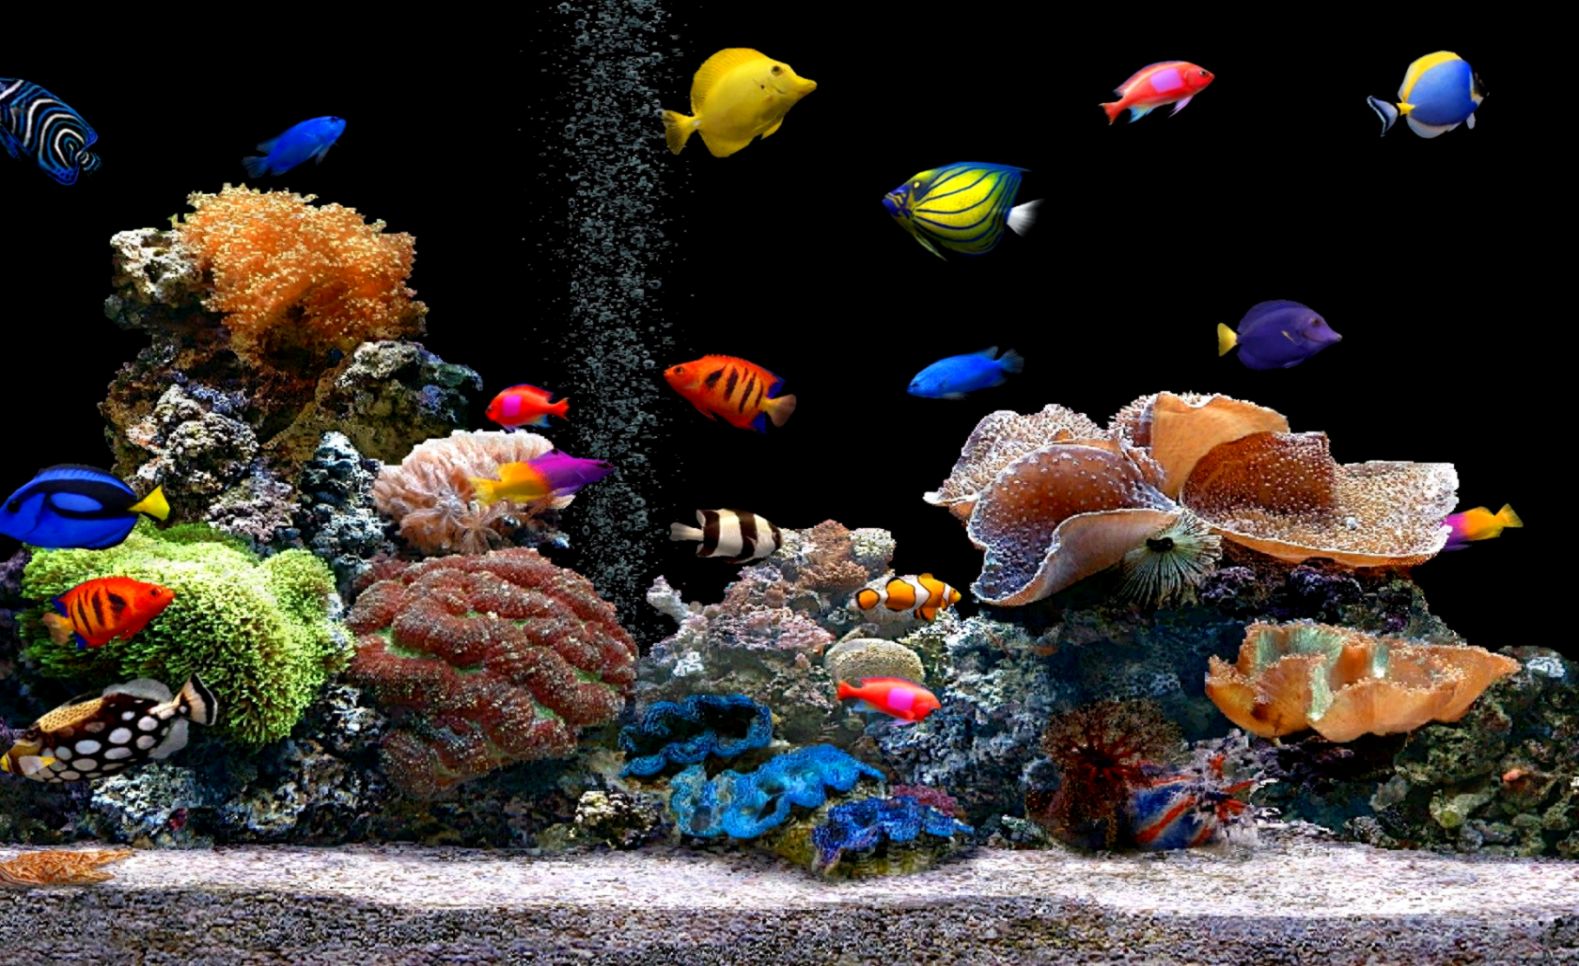 Free Download Live Hd Wallpaper Fish Aquarium 3d Desktop - Live Wallpaper Hd Free Download - HD Wallpaper 